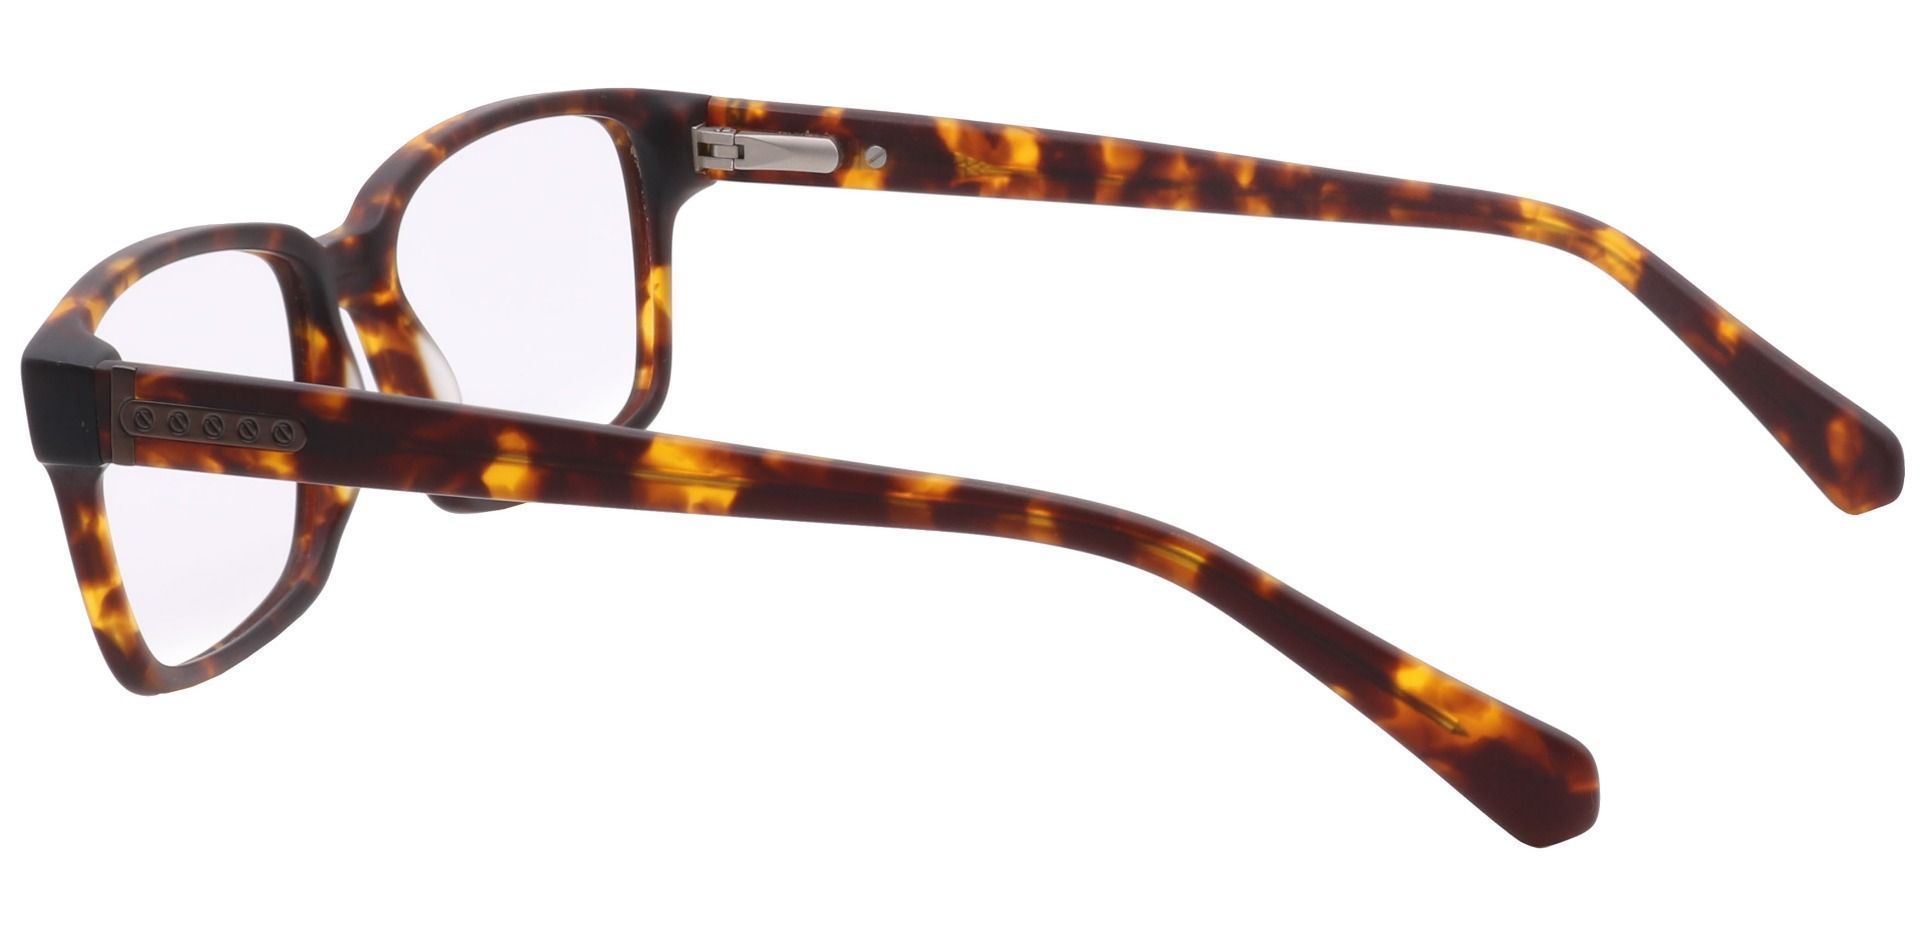 Clifford Rectangle Progressive Glasses - Tortoise